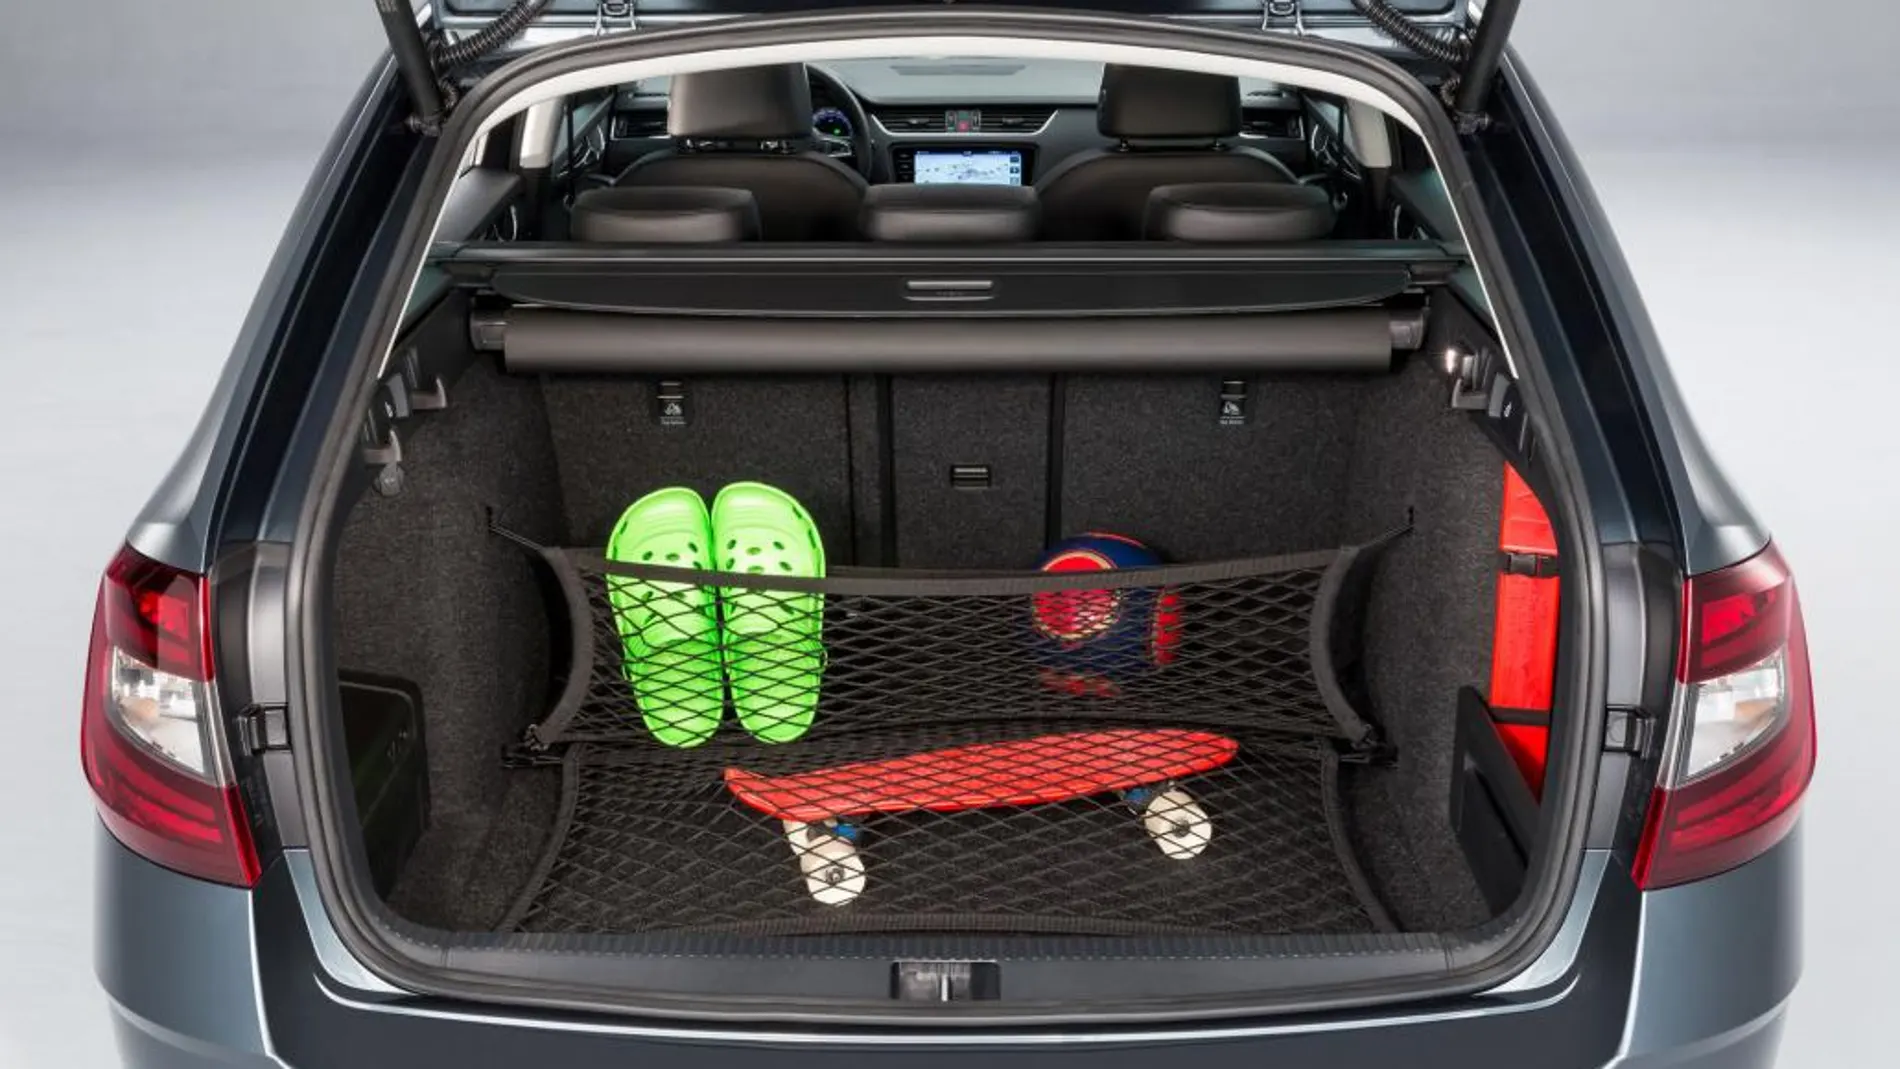 La capacidad de maletero del Skoda Octavia Combi es de 610 litros.